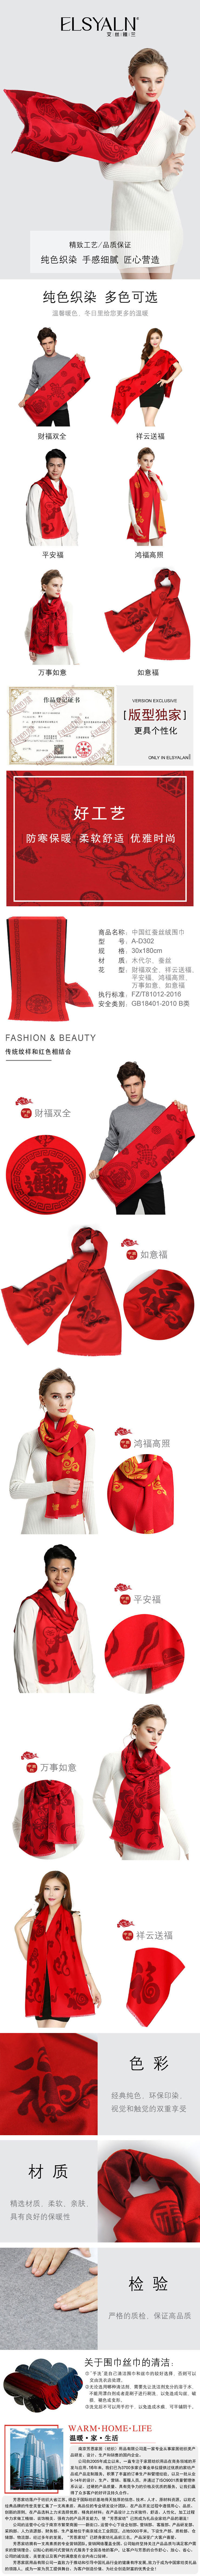 红围巾,定制围巾,年会礼品,开门红,促销礼品,围巾批发,围巾工厂